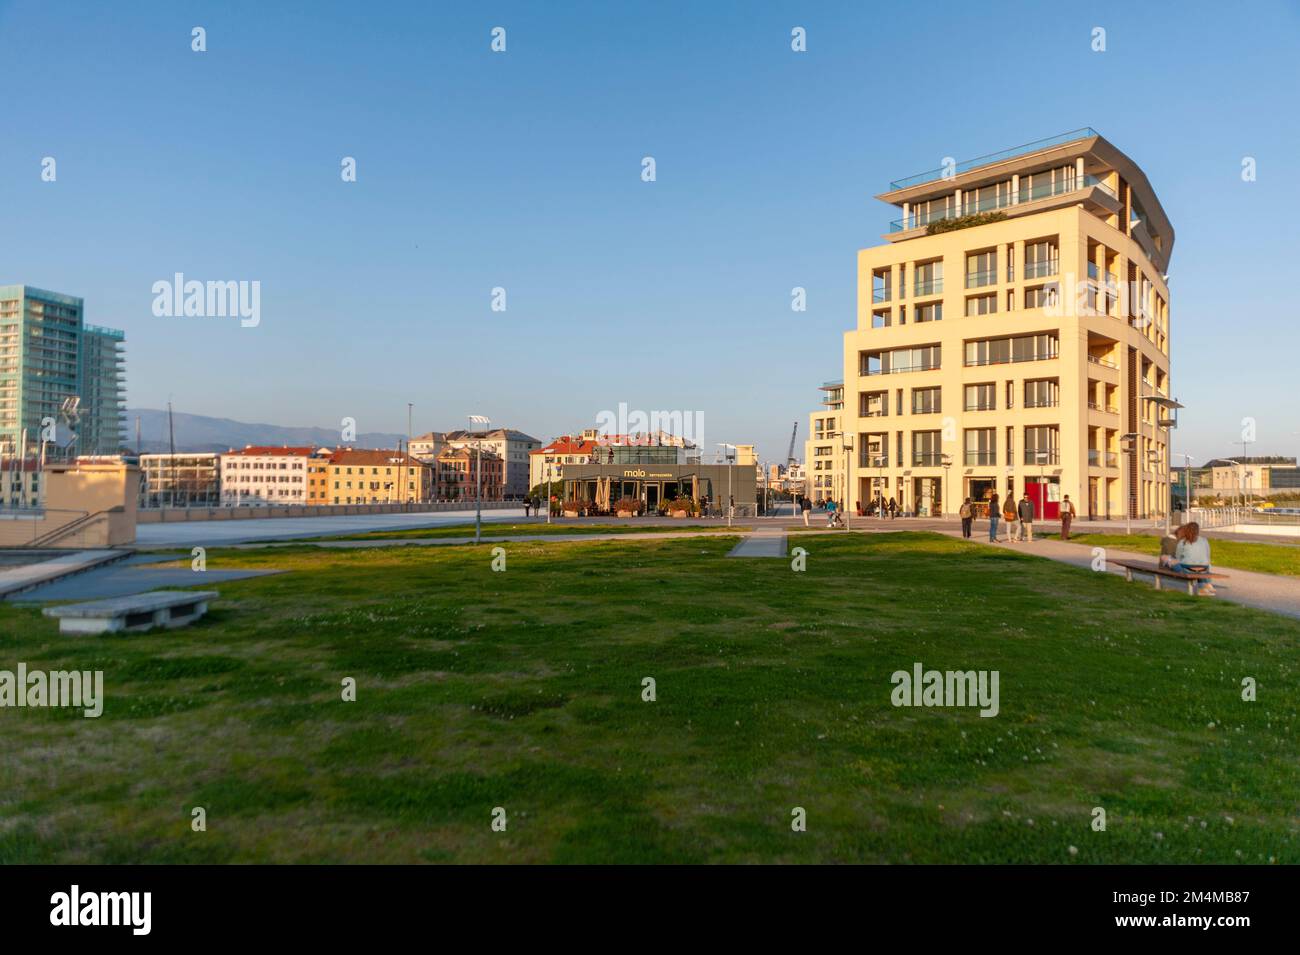 Italie, Savona. Panorama, vue sur la ville de Savona dans le quartier de Porto Nuovo. Bâtiment et architecture modernes. Banque D'Images